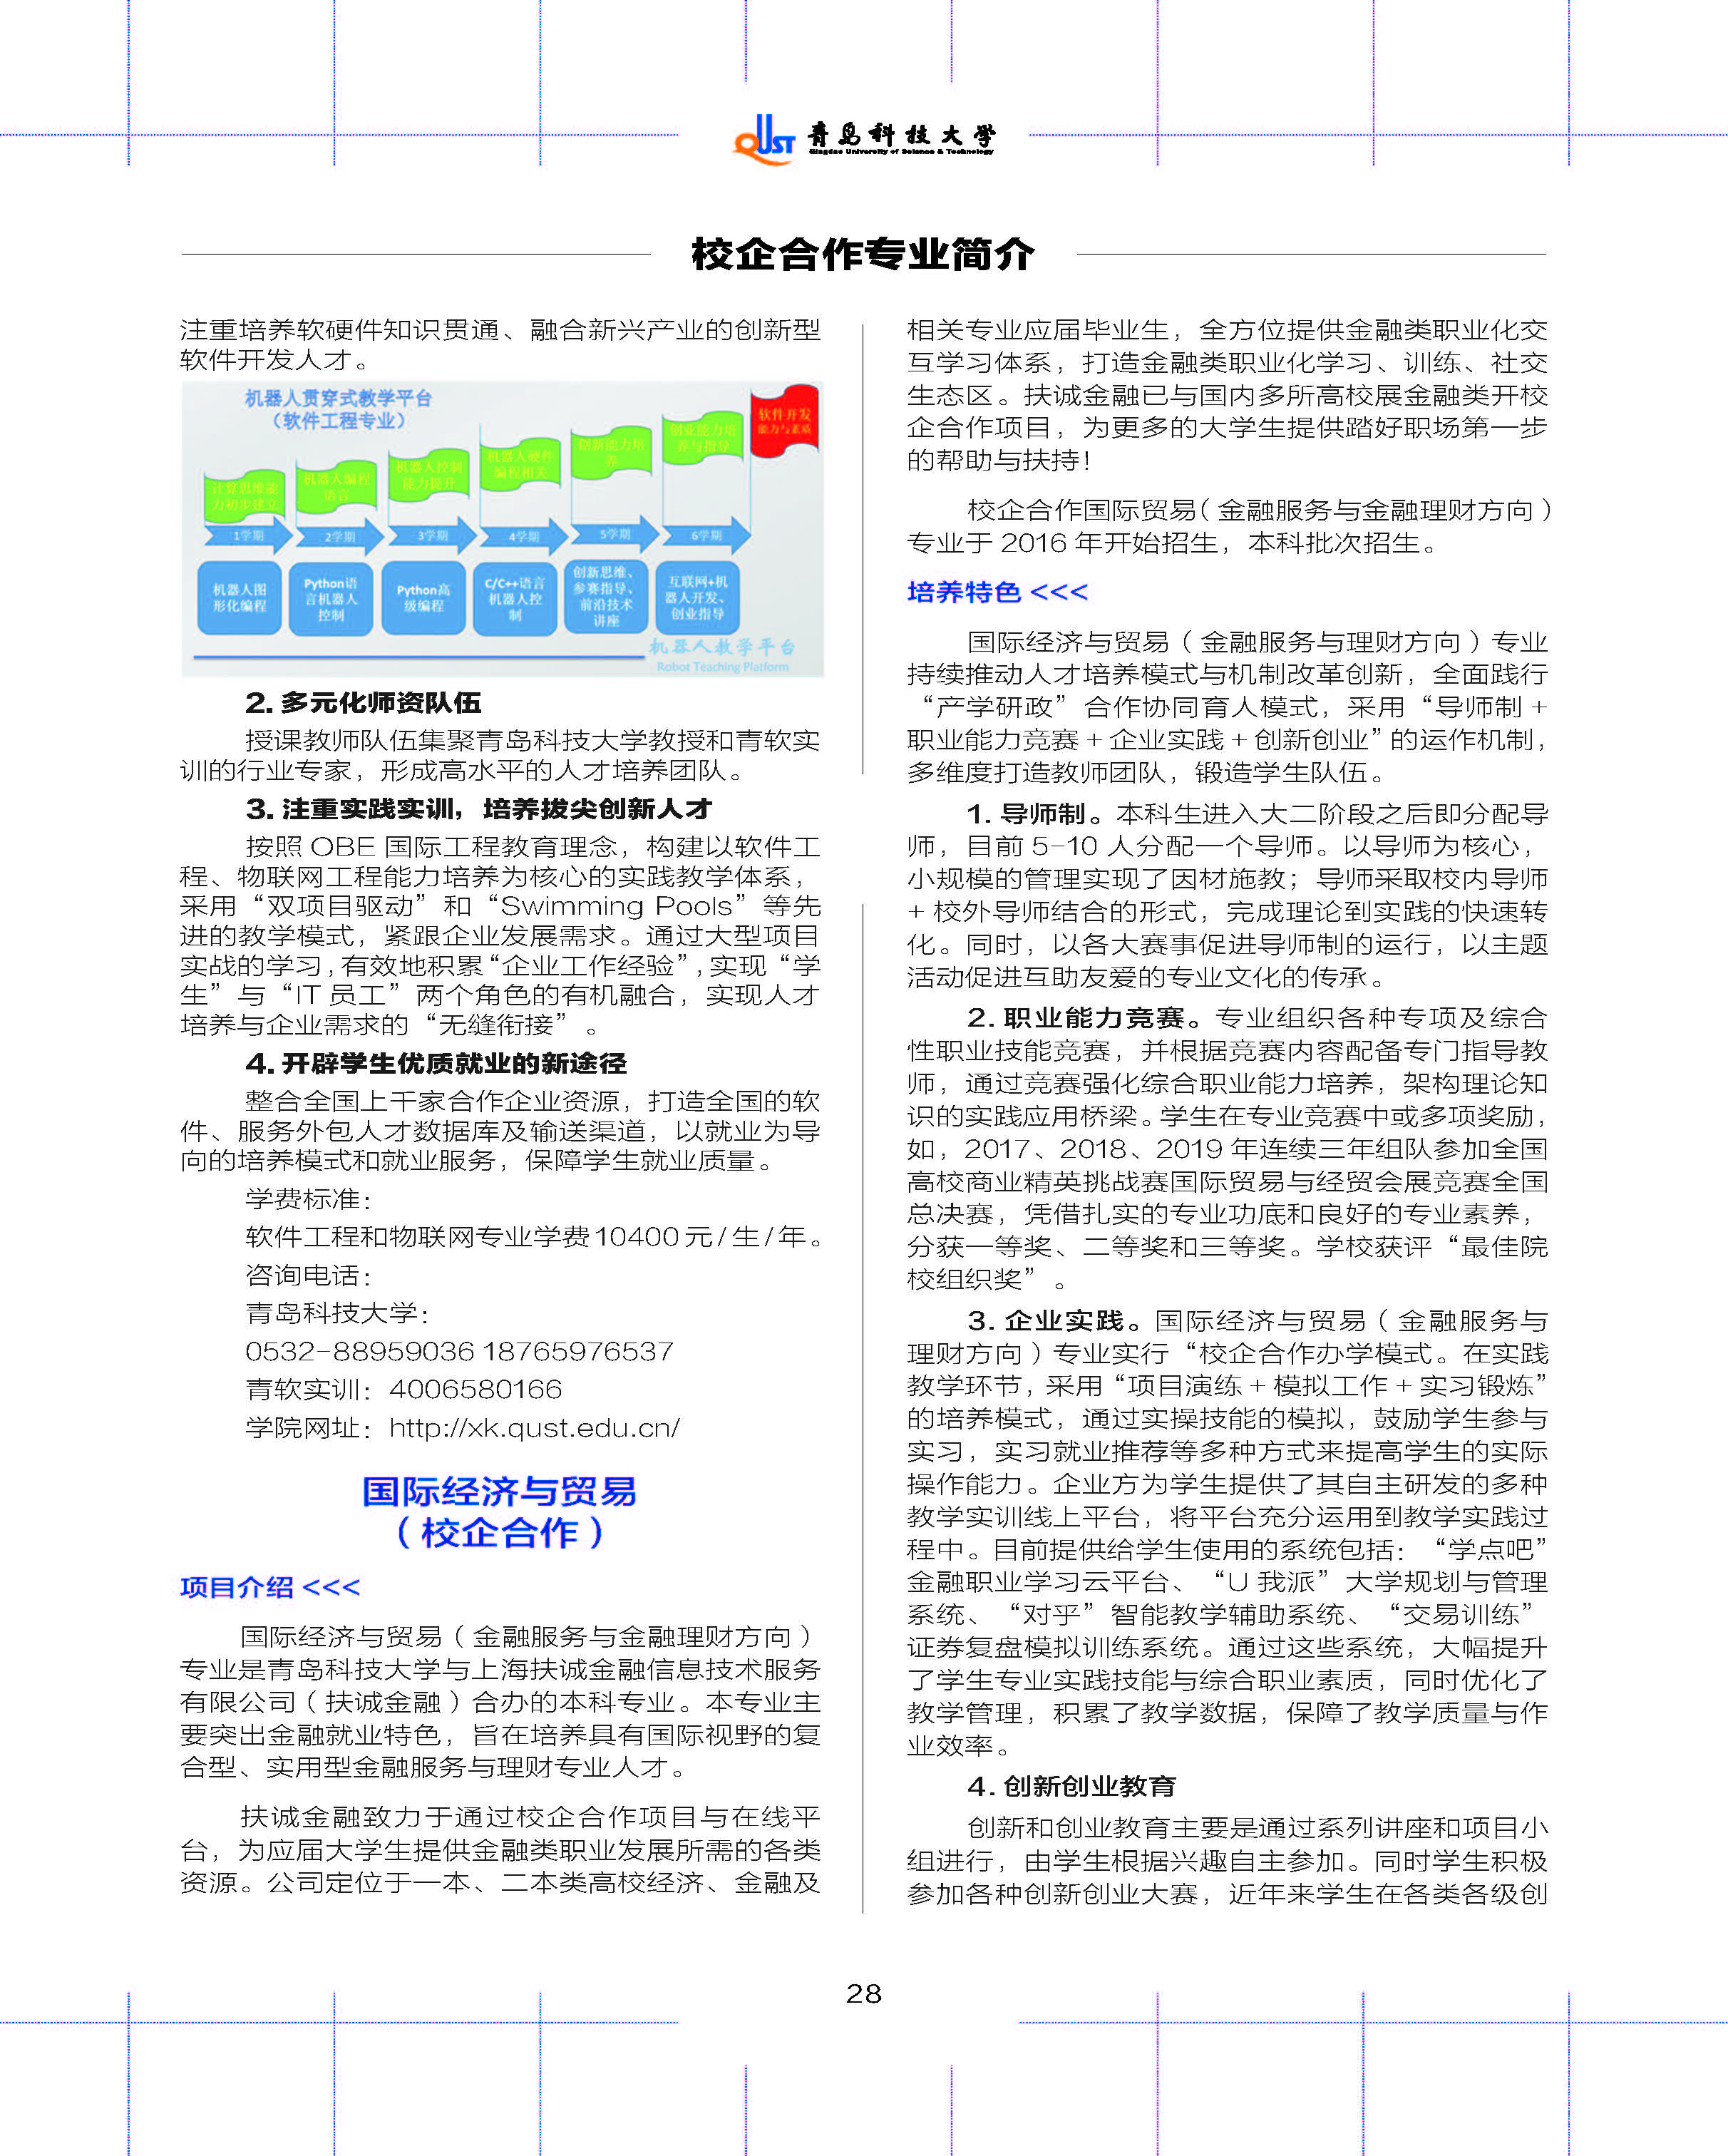 青岛科技大学2020年报考指南